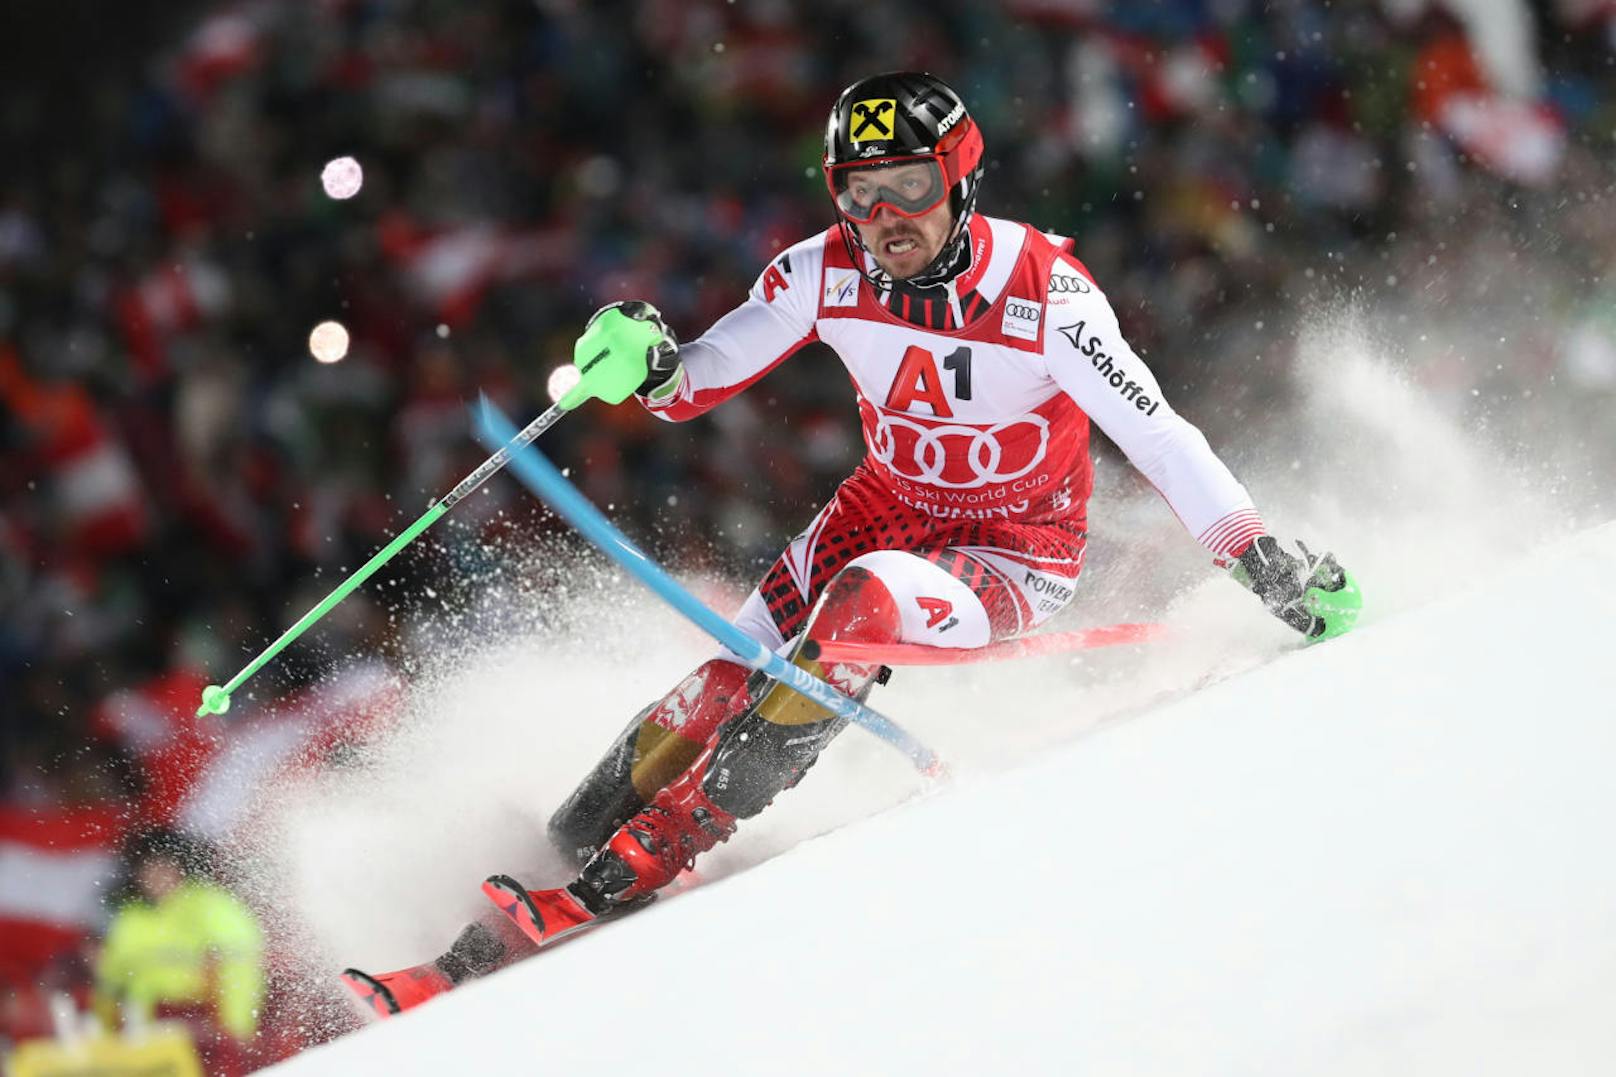 Im Jänner ging es wie immer Schlag auf Schlag. Beim Schladming-Slalom konnten 50.000 Fans einen grandiosen Triumph von Marcel Hirscher bejubeln.

<b><i>Schladming, Slalom (29.1.2019)</i></b><i>
<b>1. Marcel Hirscher</b>
2. Alexis Pinturault (Fr)
3. Daniel Yule (Sz)</i>